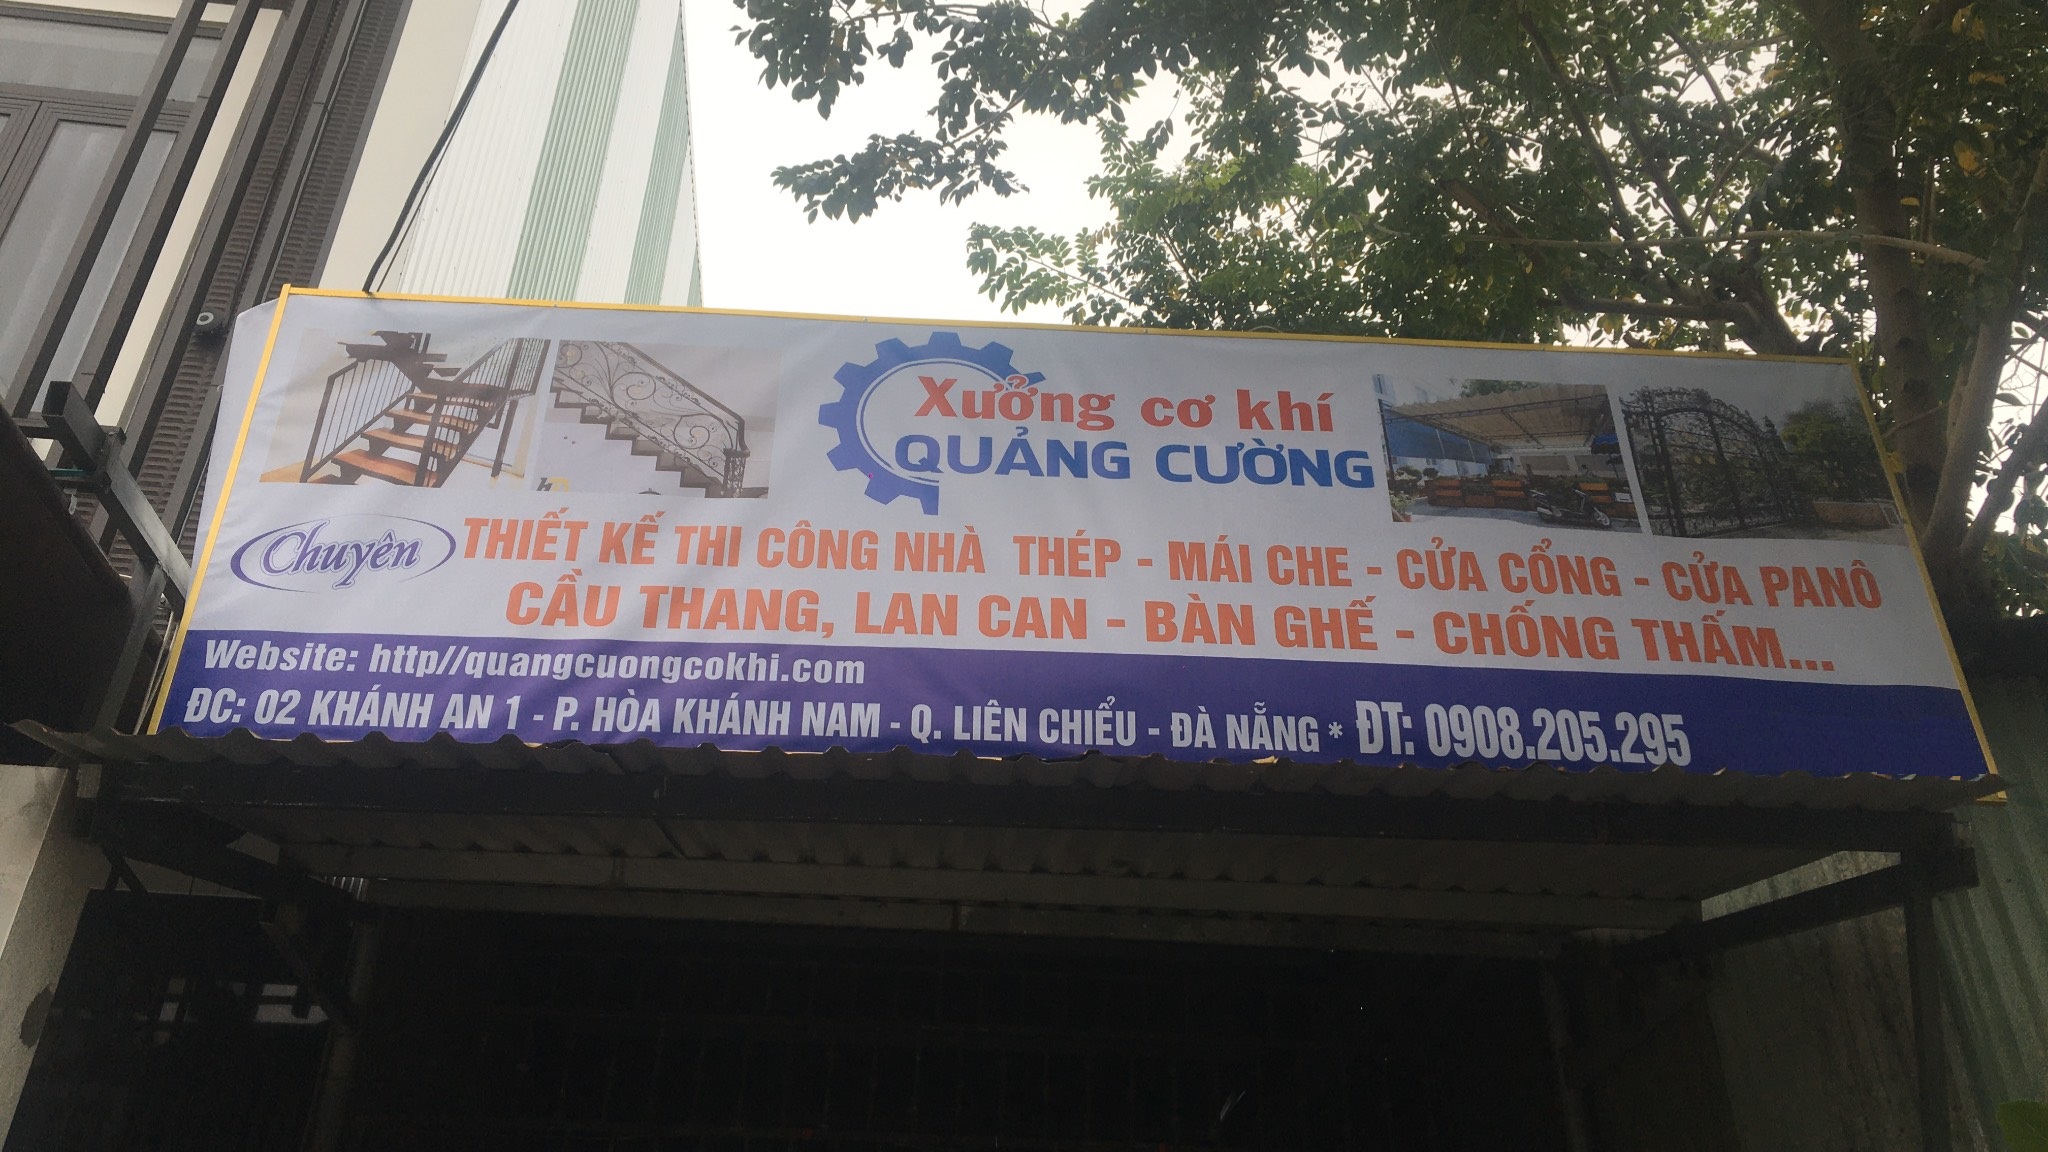 Bien Hieu Quang Cuong